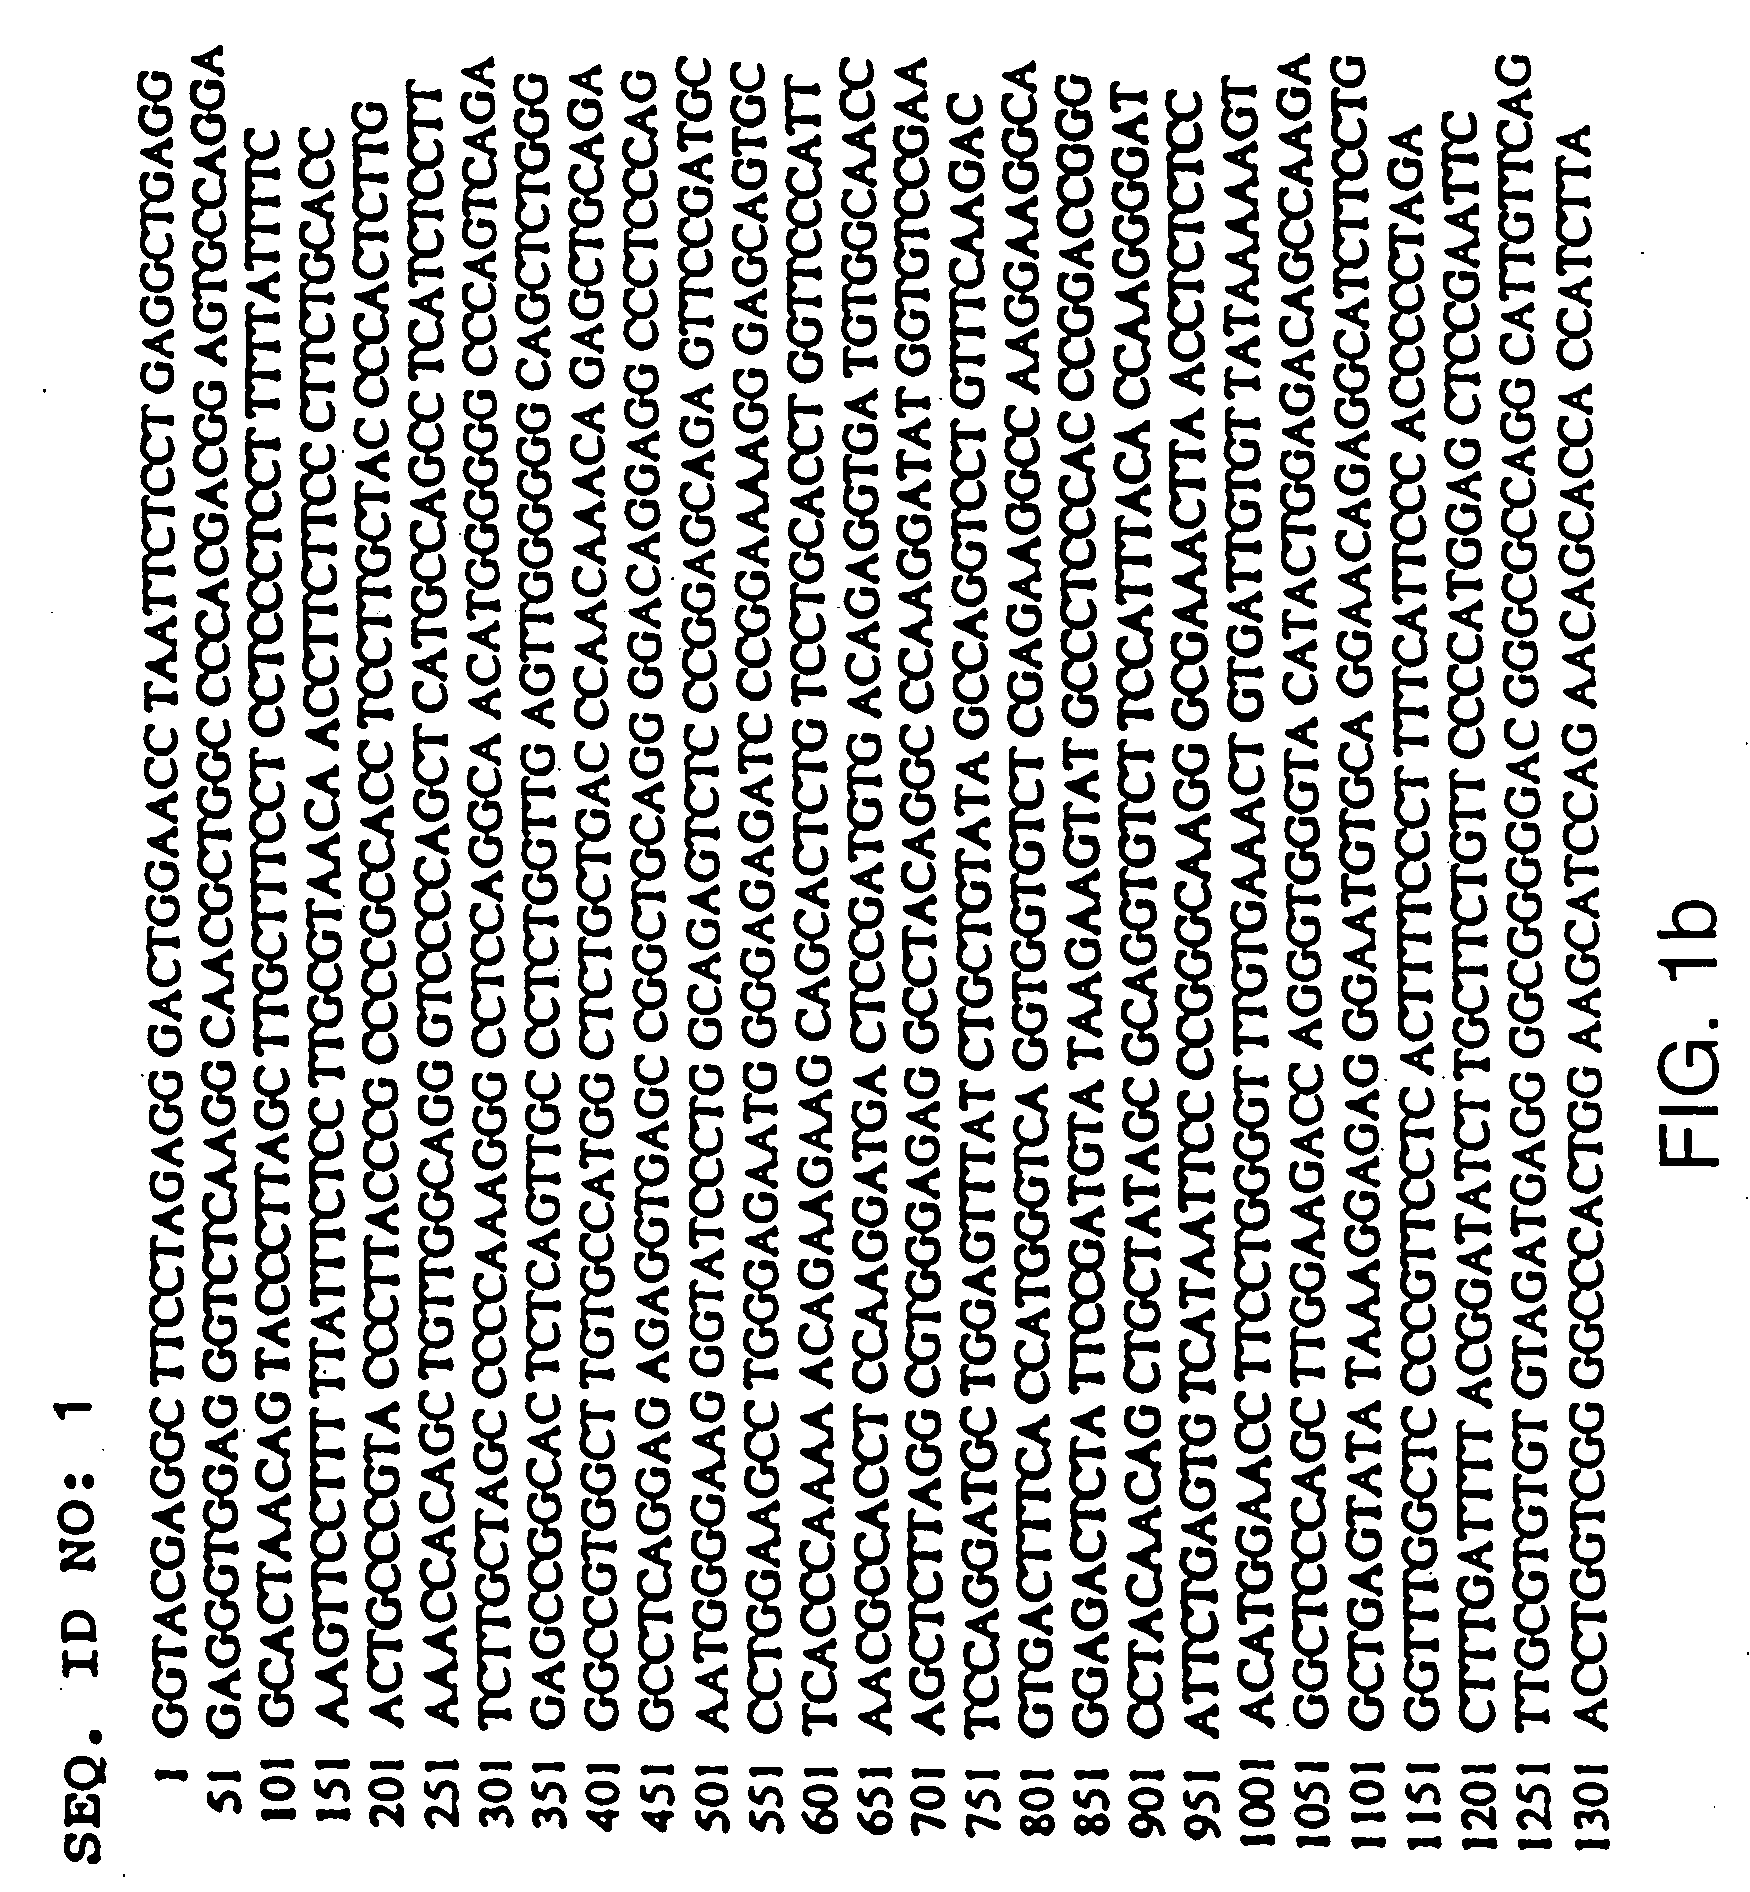 Heterologous polypeptide of the TNF family